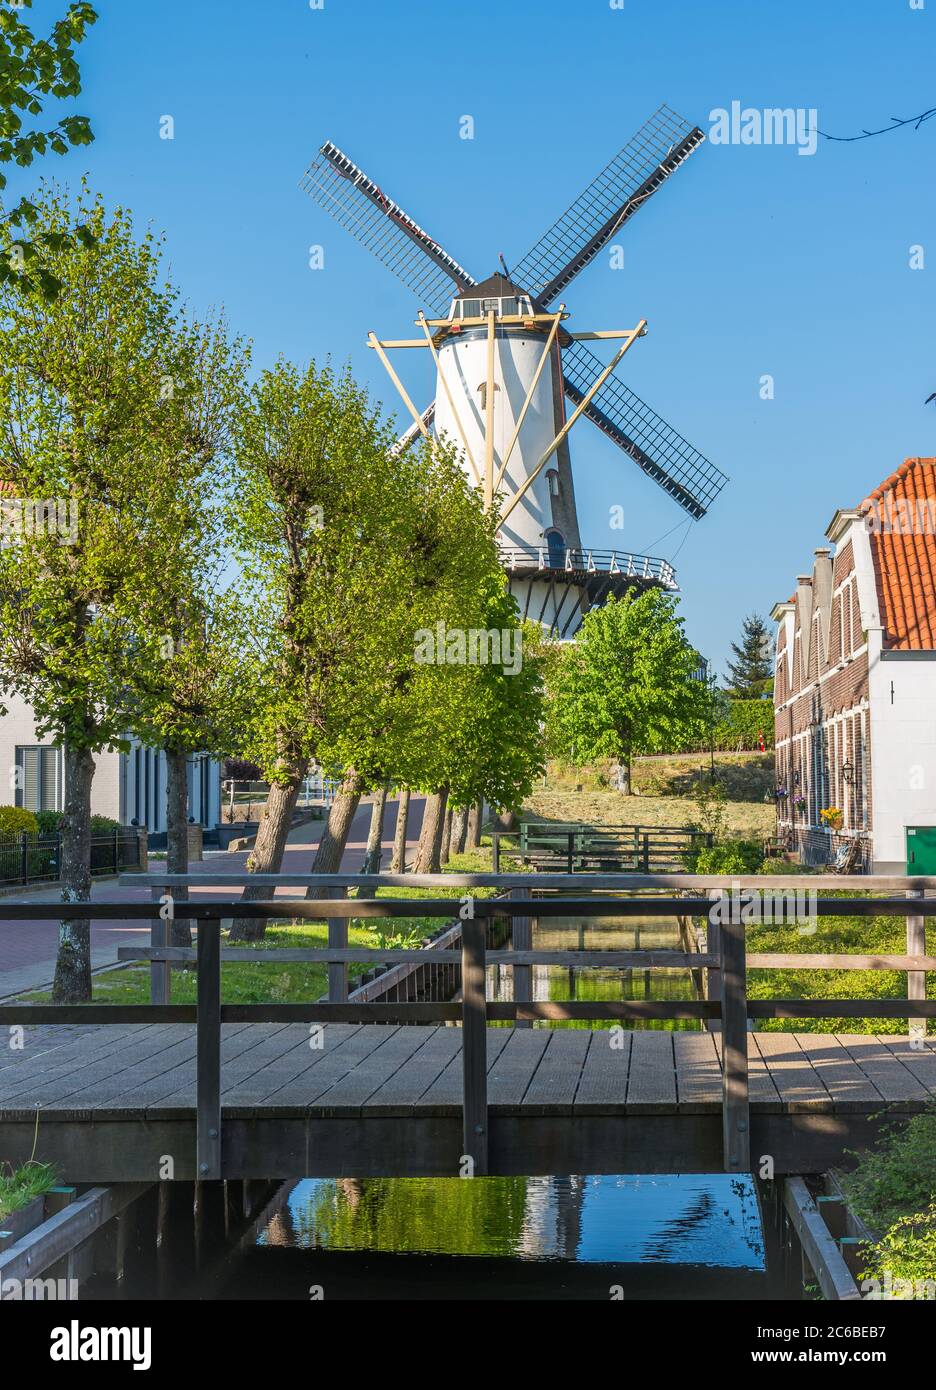 Malerische Landschaft mit einer traditionellen niederländischen Windmühle namens 'd'Orangemolen' (auf niederländisch) in Willemstad, Provinz Nordbrabant, Niederlande Stockfoto